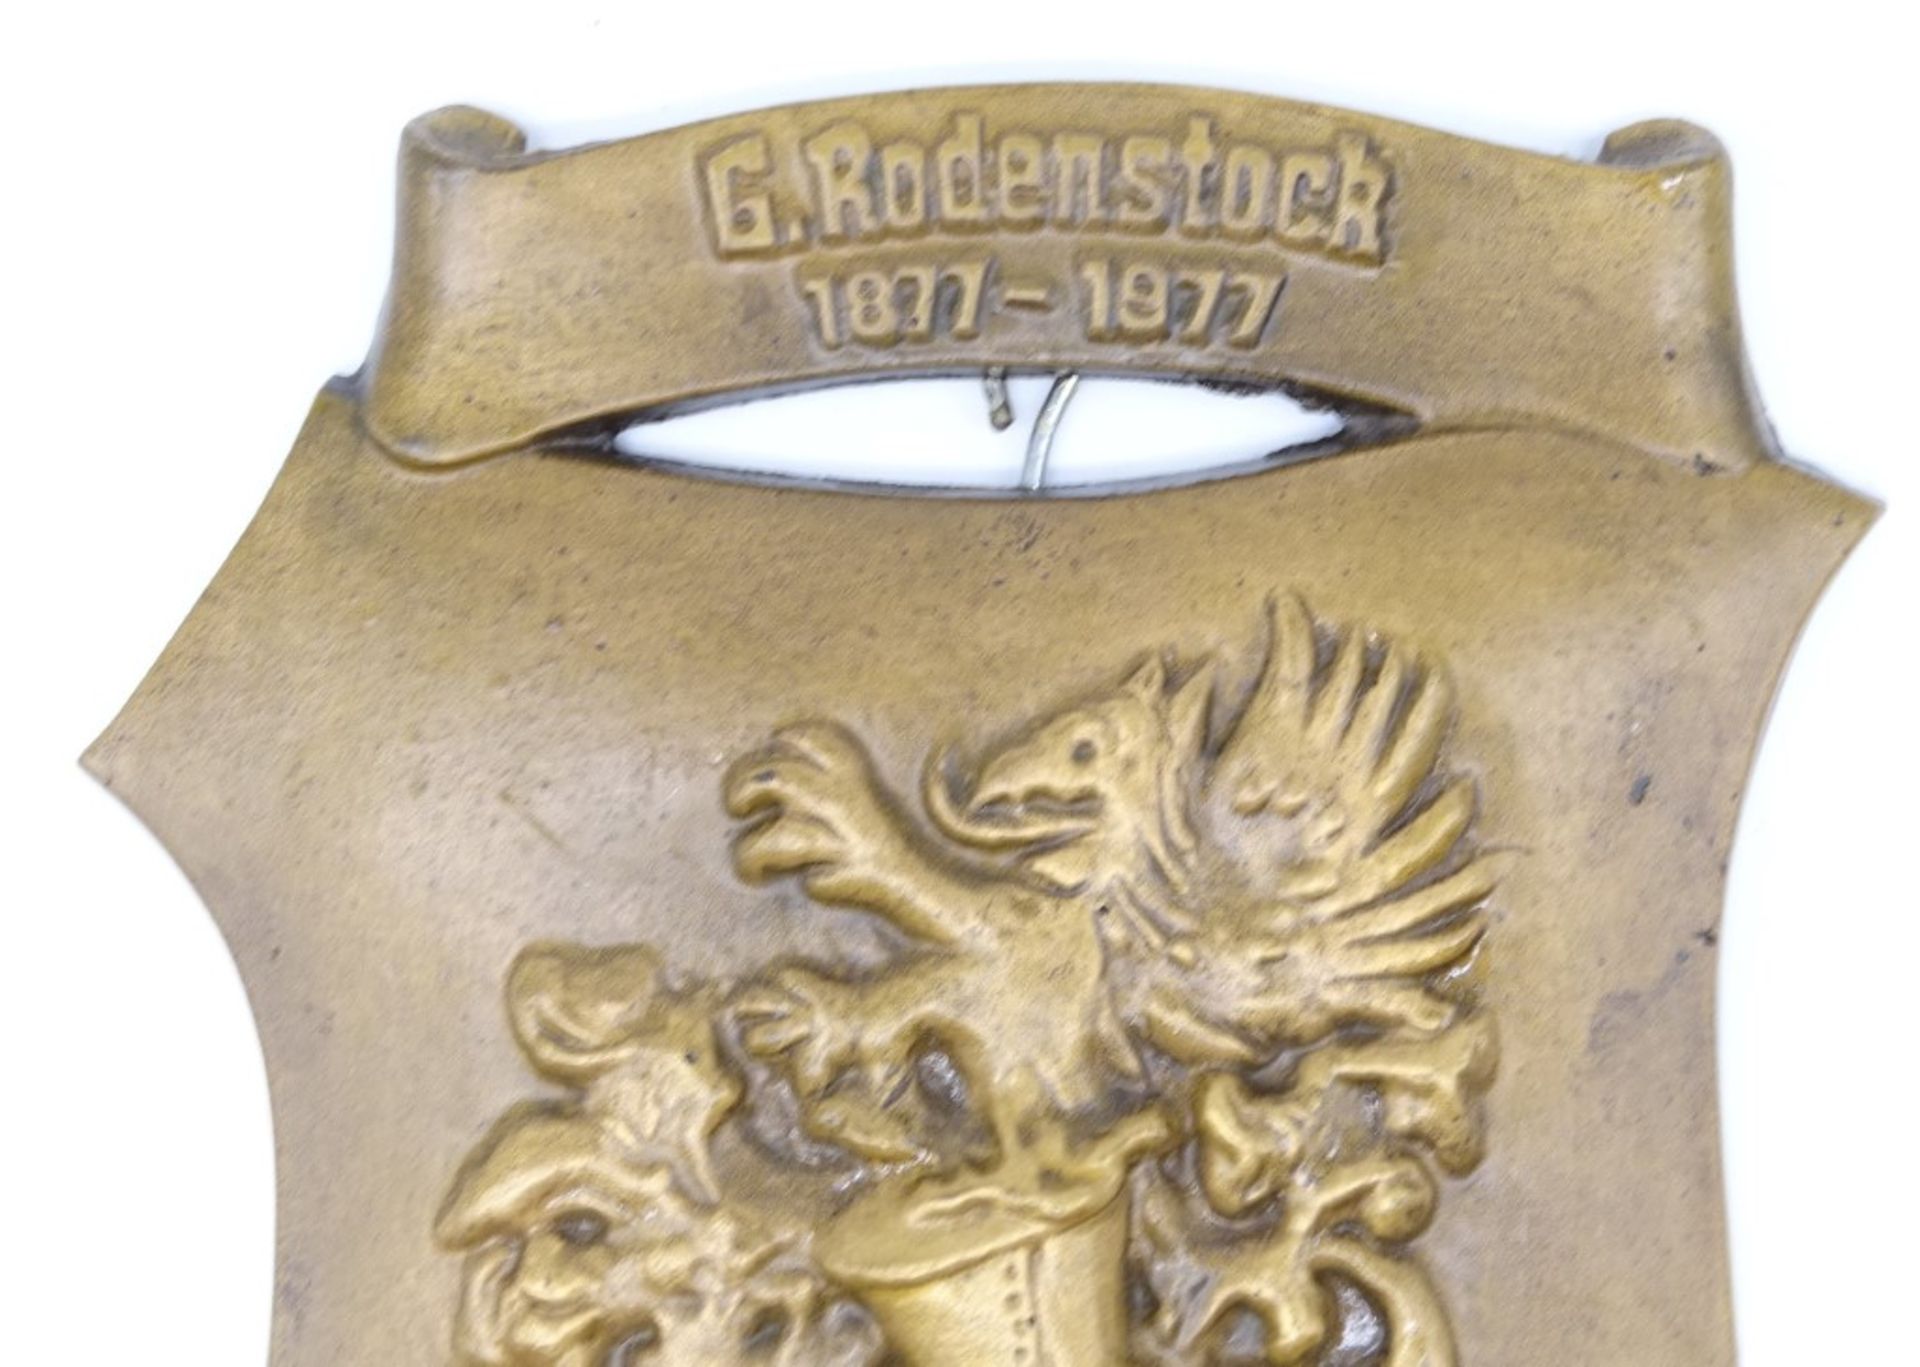 Wappenschild, Bronze, "G. Rodenstock 2877-1977, Der Brillenmacher", ca. 14 x 20 cm - Bild 3 aus 4